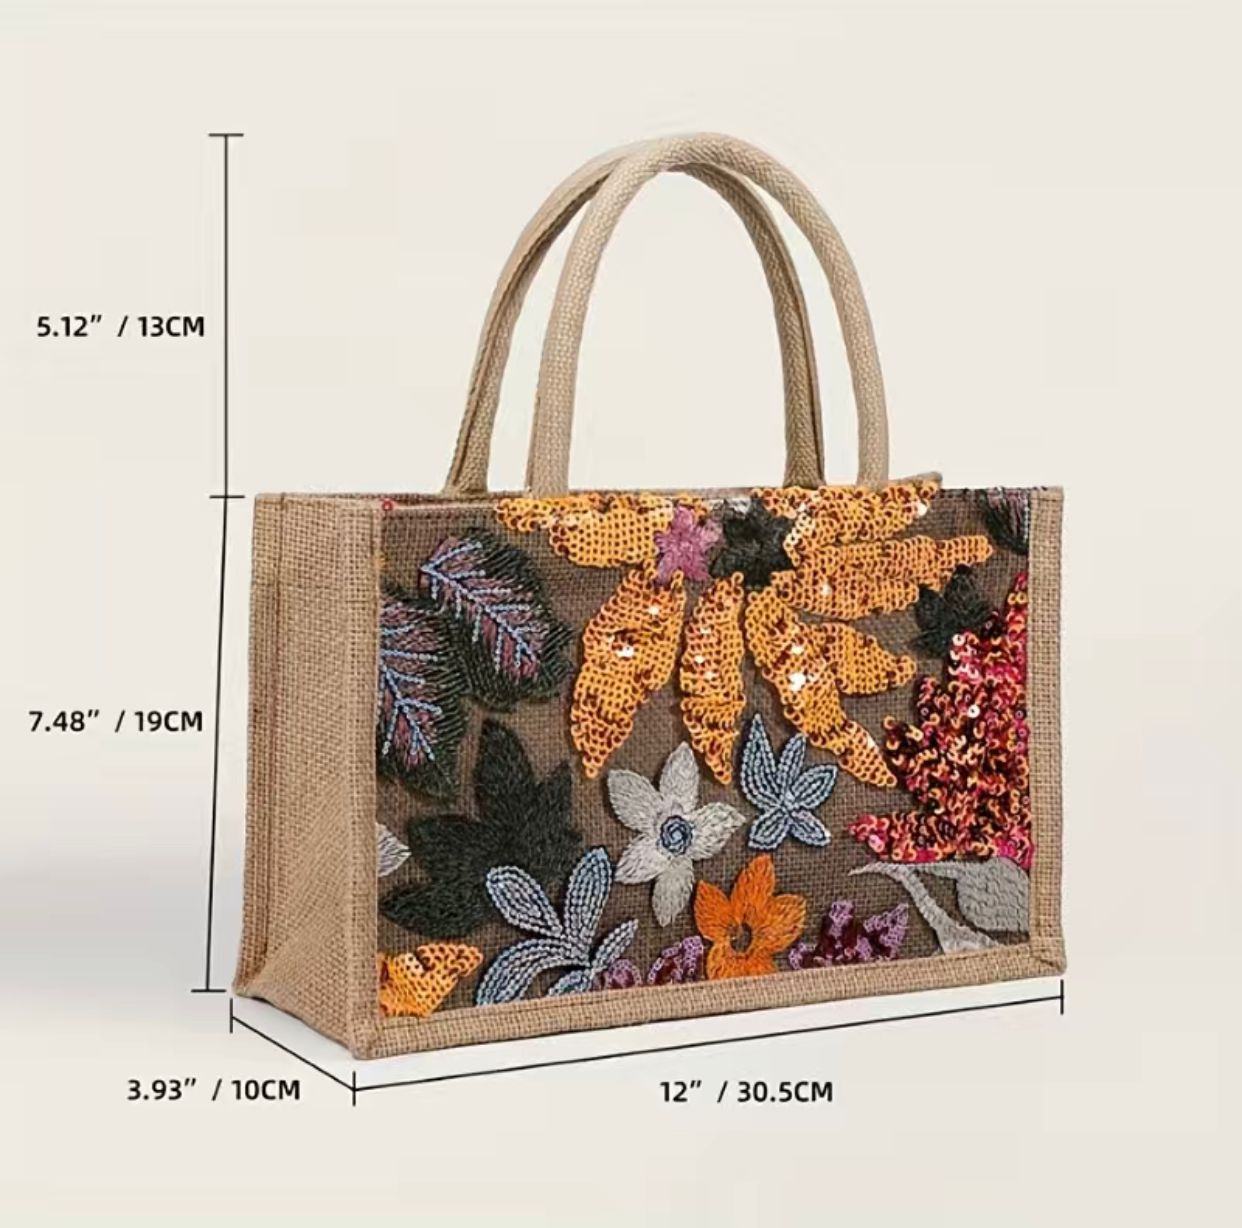 The Floral Sequin Decor Burlap Satchel Bag